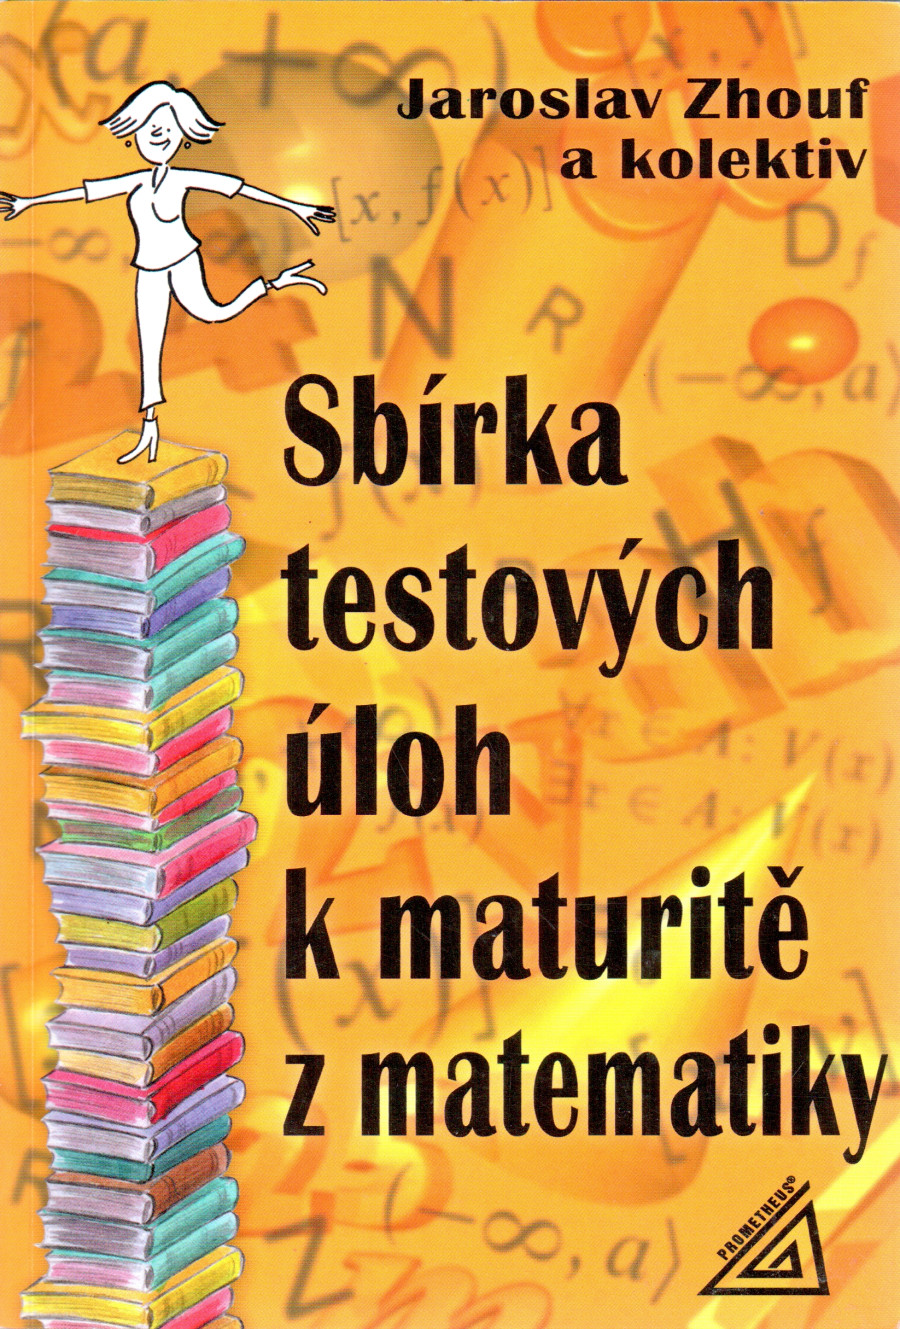 Sbírka testových úloh k maturitě z matematiky - Náhled učebnice